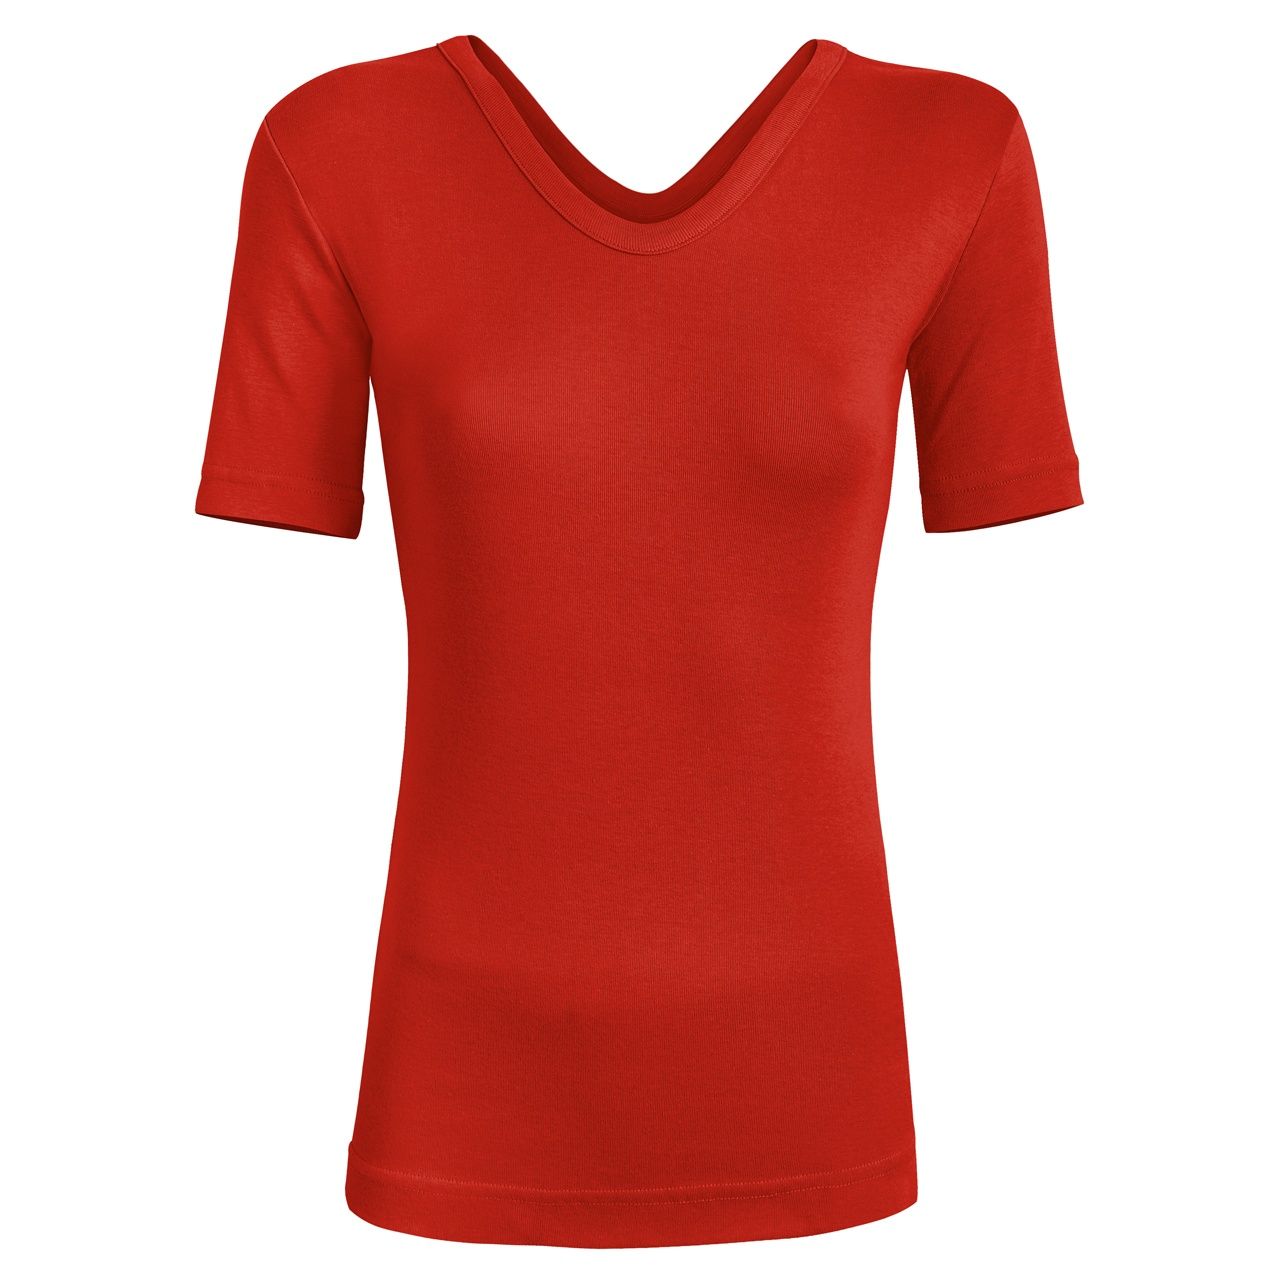 تی شرت زنانه ساروک مدل TZYVFPB03 رنگ قرمز -  - 1